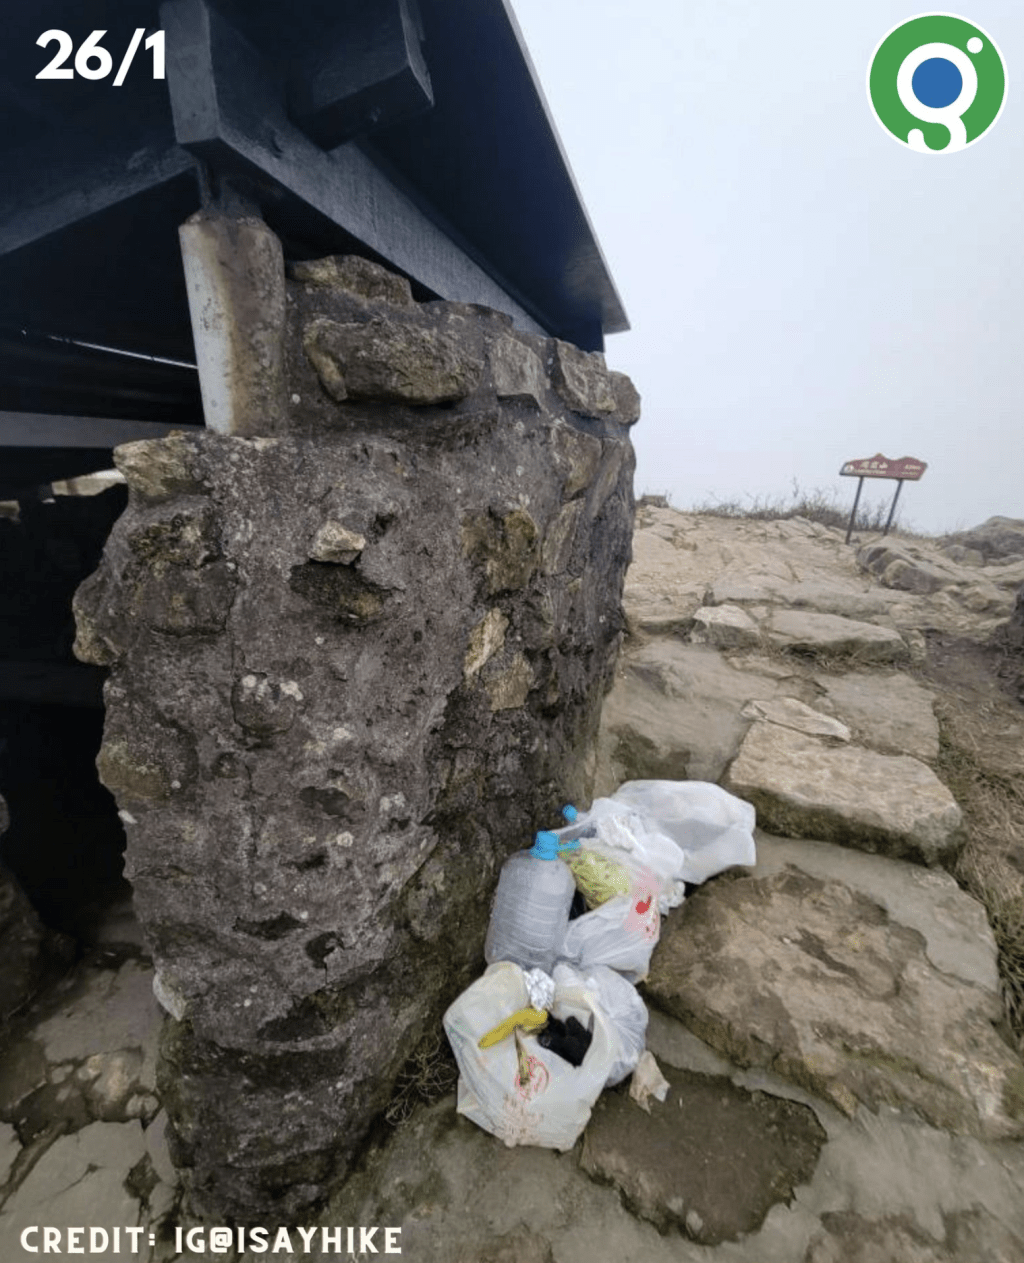 拍攝日期為1月26日，兩袋垃圾變成三袋。「綠惜地球」fb圖片